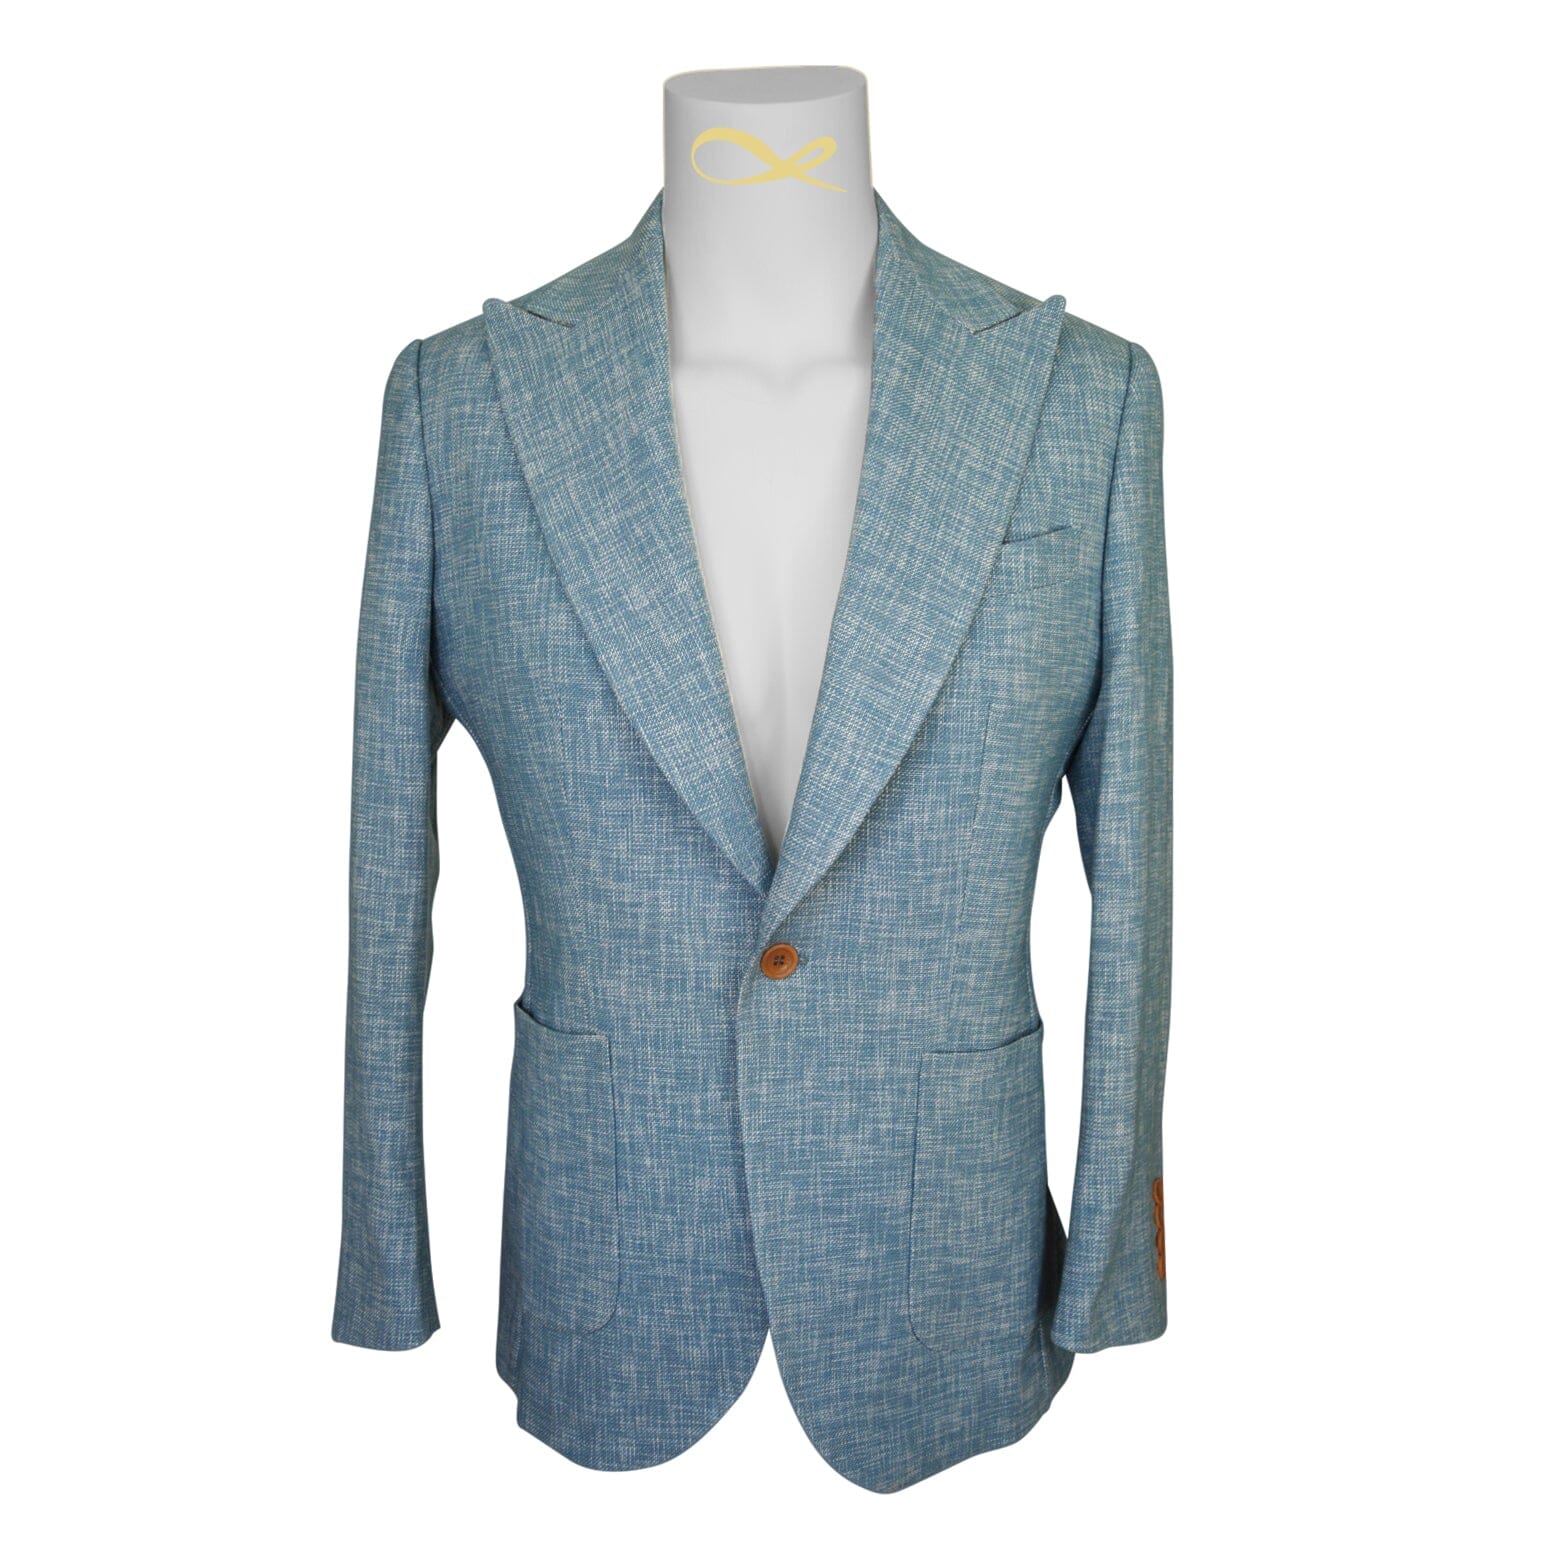 Teal Blu Lino Tweed Jacket